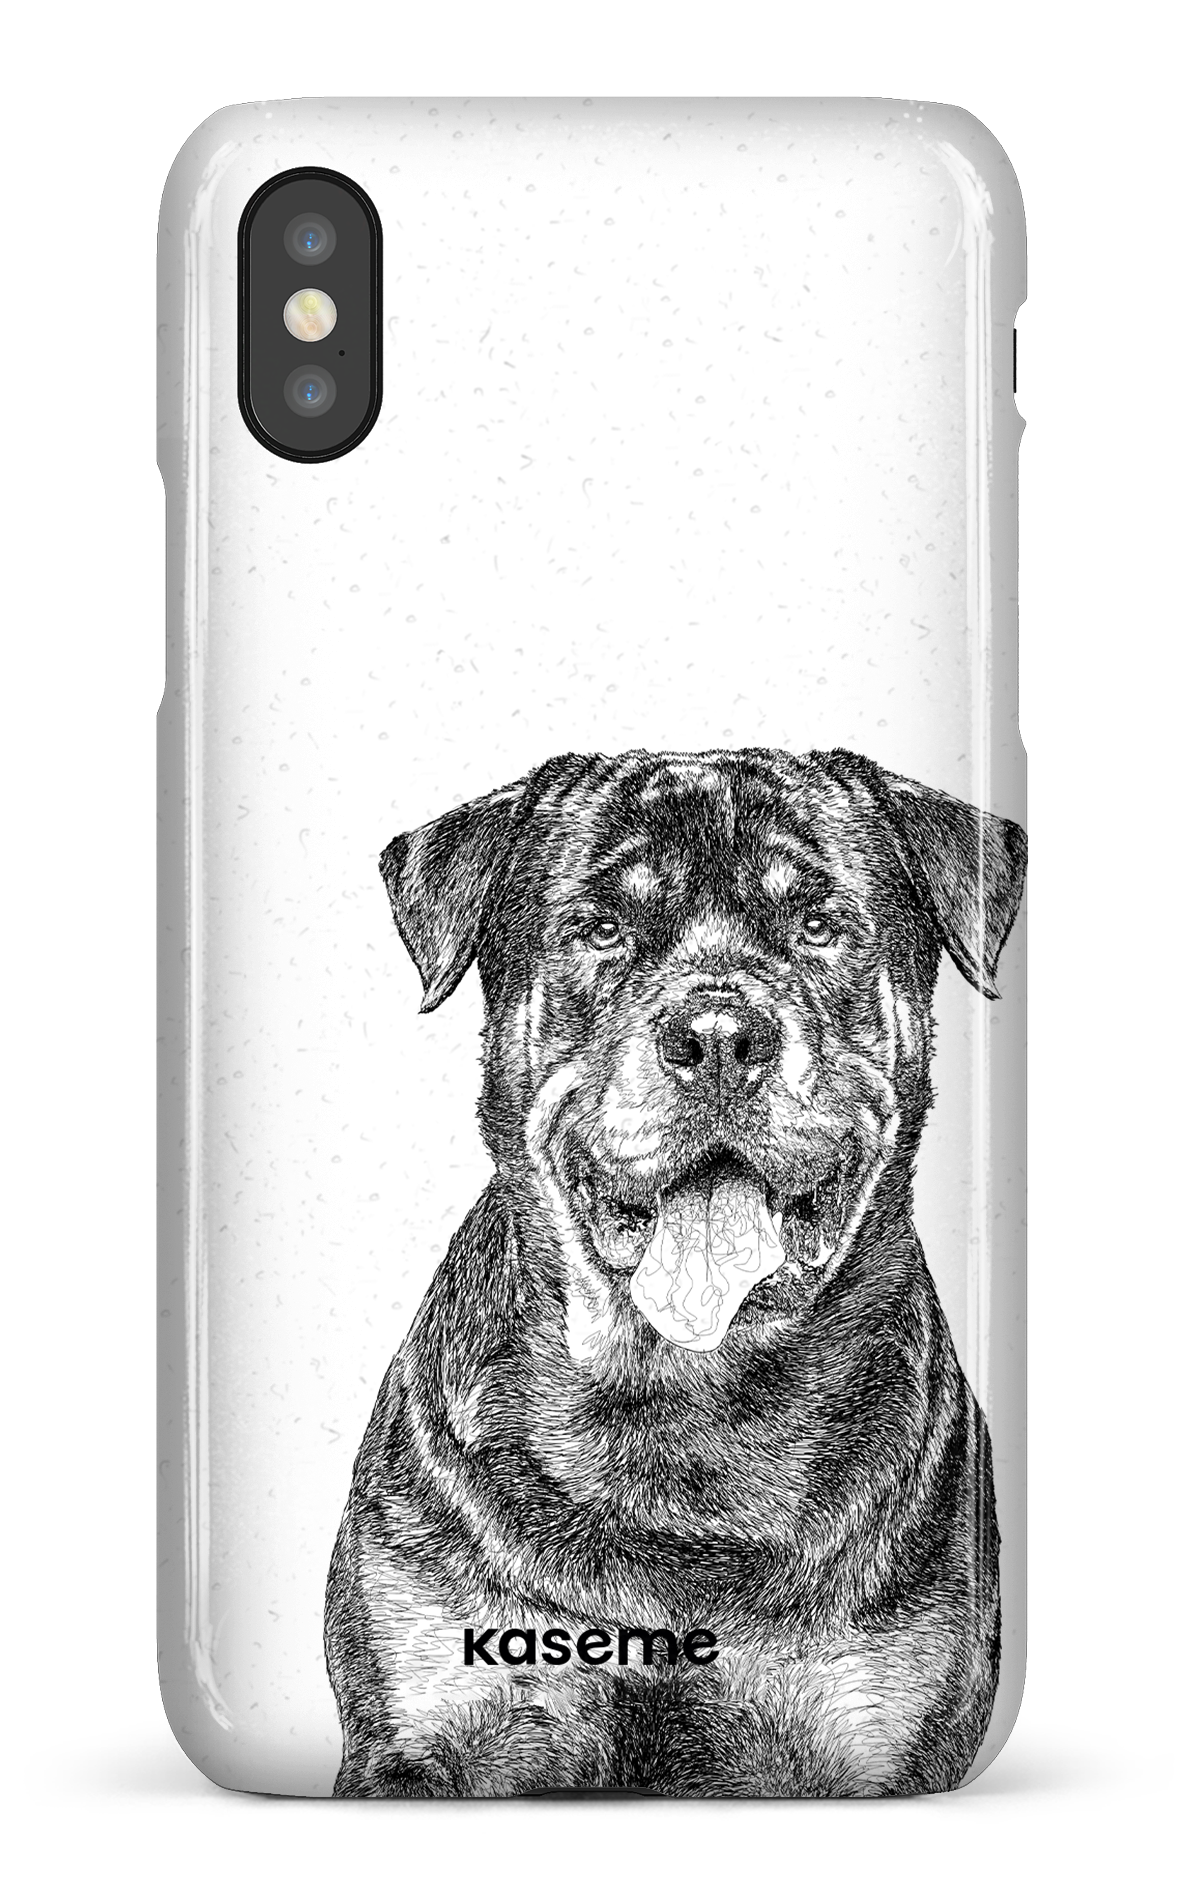 Rottweiler - iPhone X/Xs